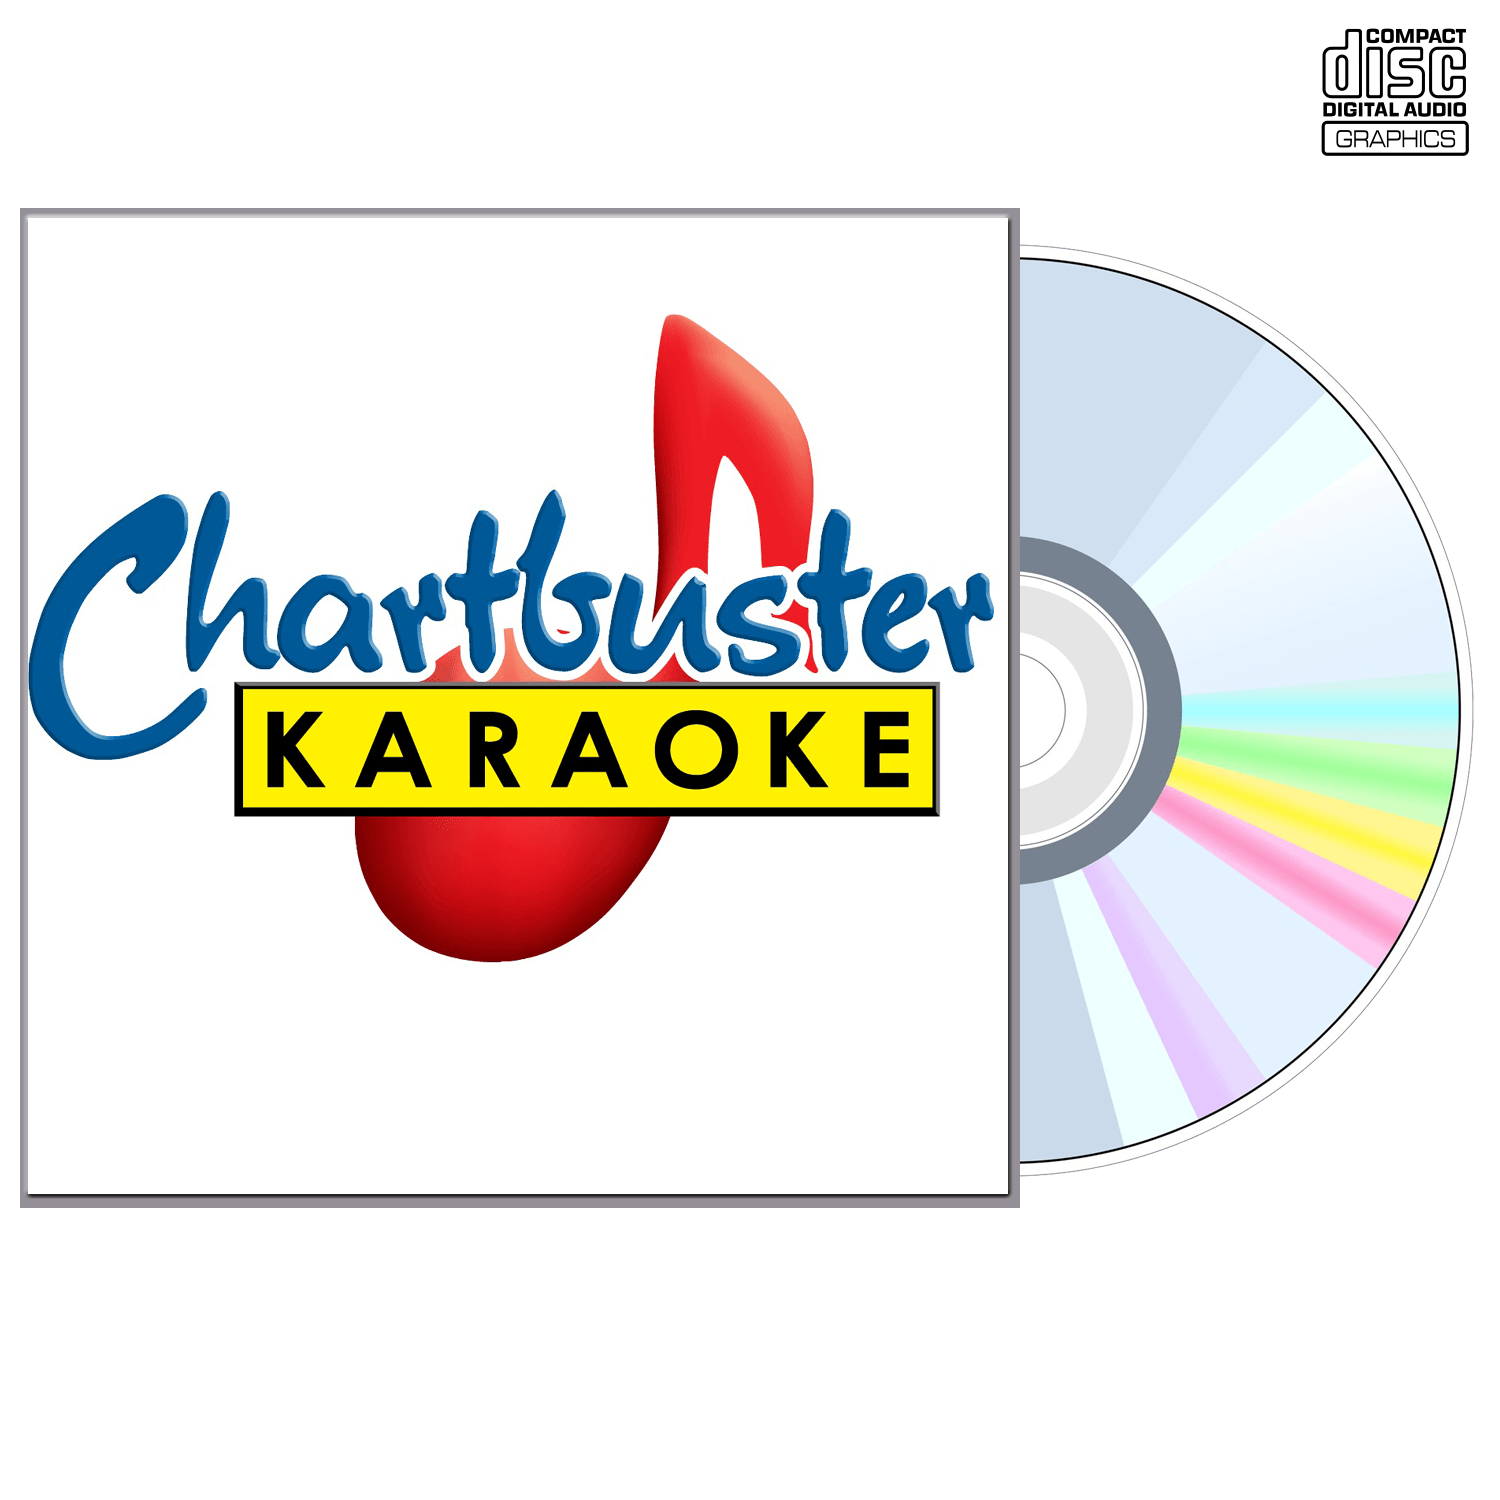 Beatles Vol 3 - CD+G - Chartbuster Karaoke - Karaoke Home Entertainment